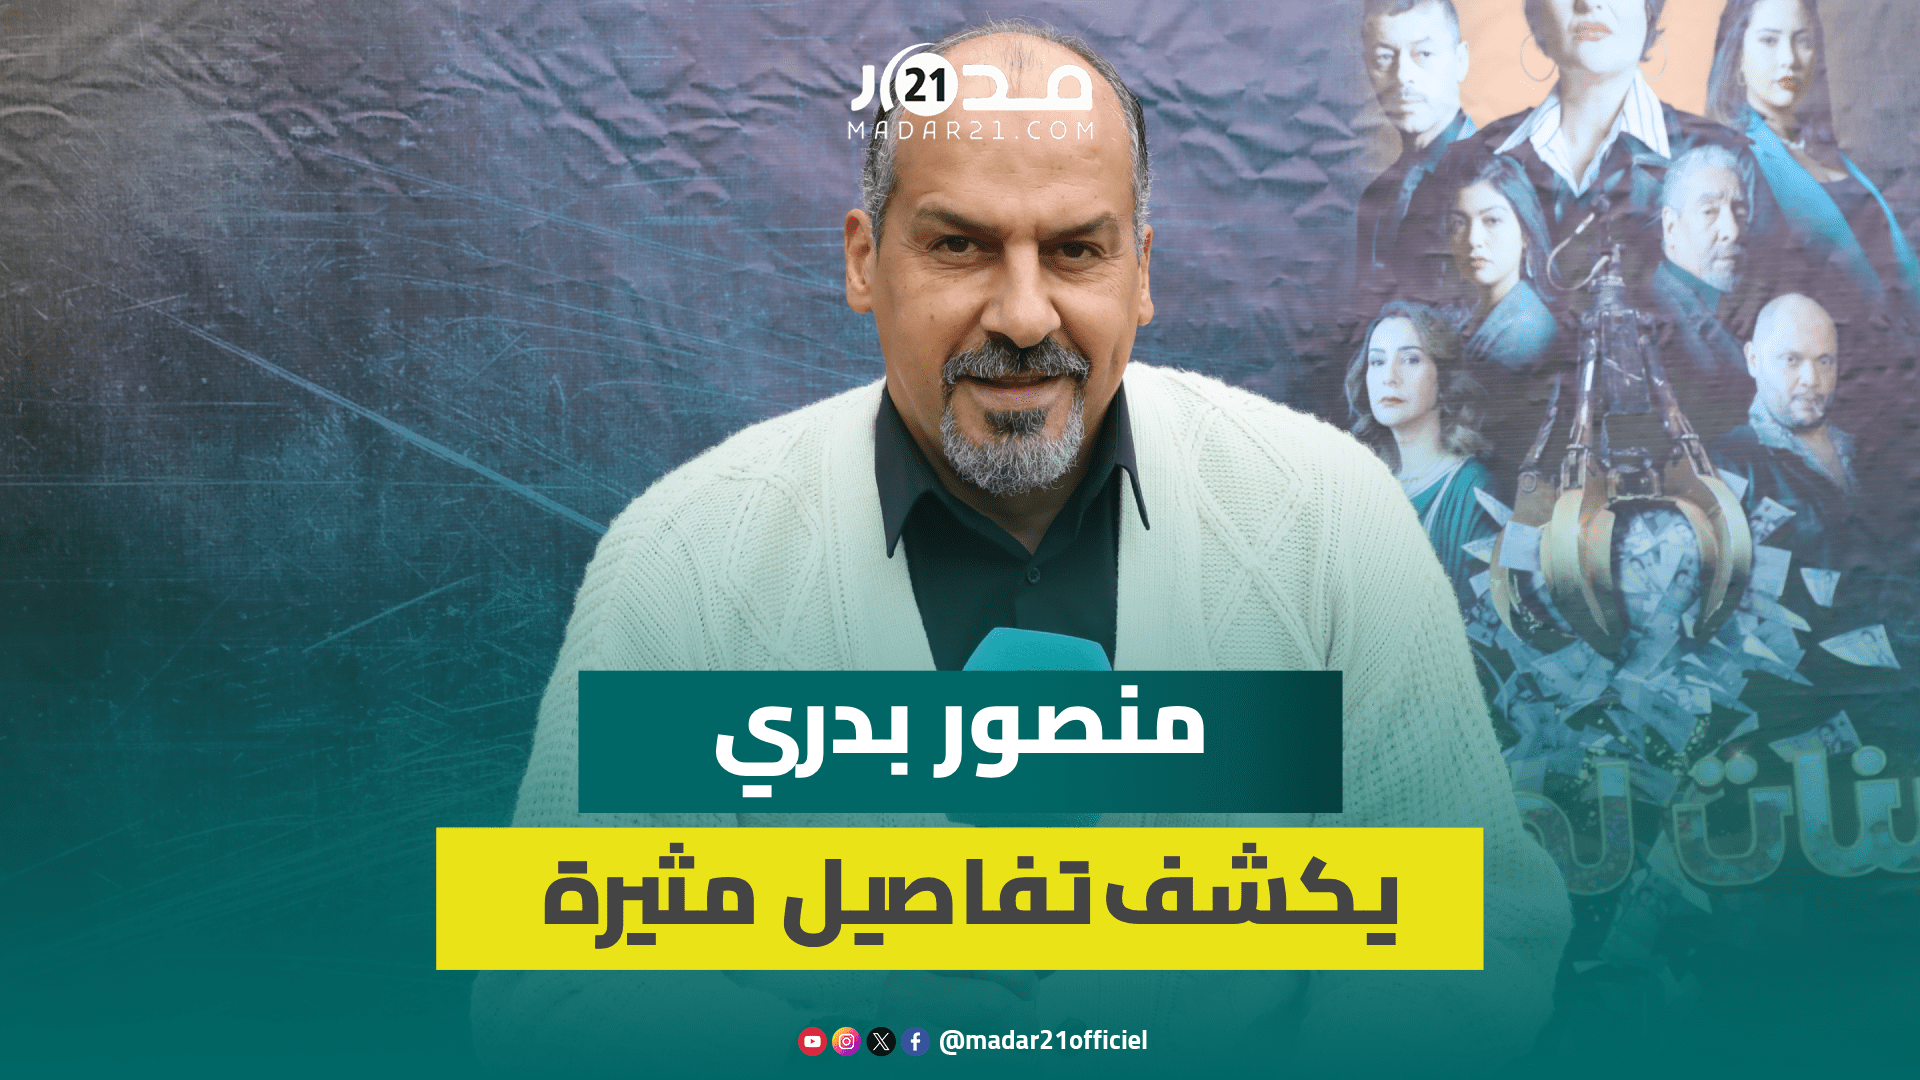 منصور بدري يكشف تفاصيل مثيرة حول تلقيه عرض الانضمام لحزب وهذا سبب تخوف الفنان من النقاش السياسي